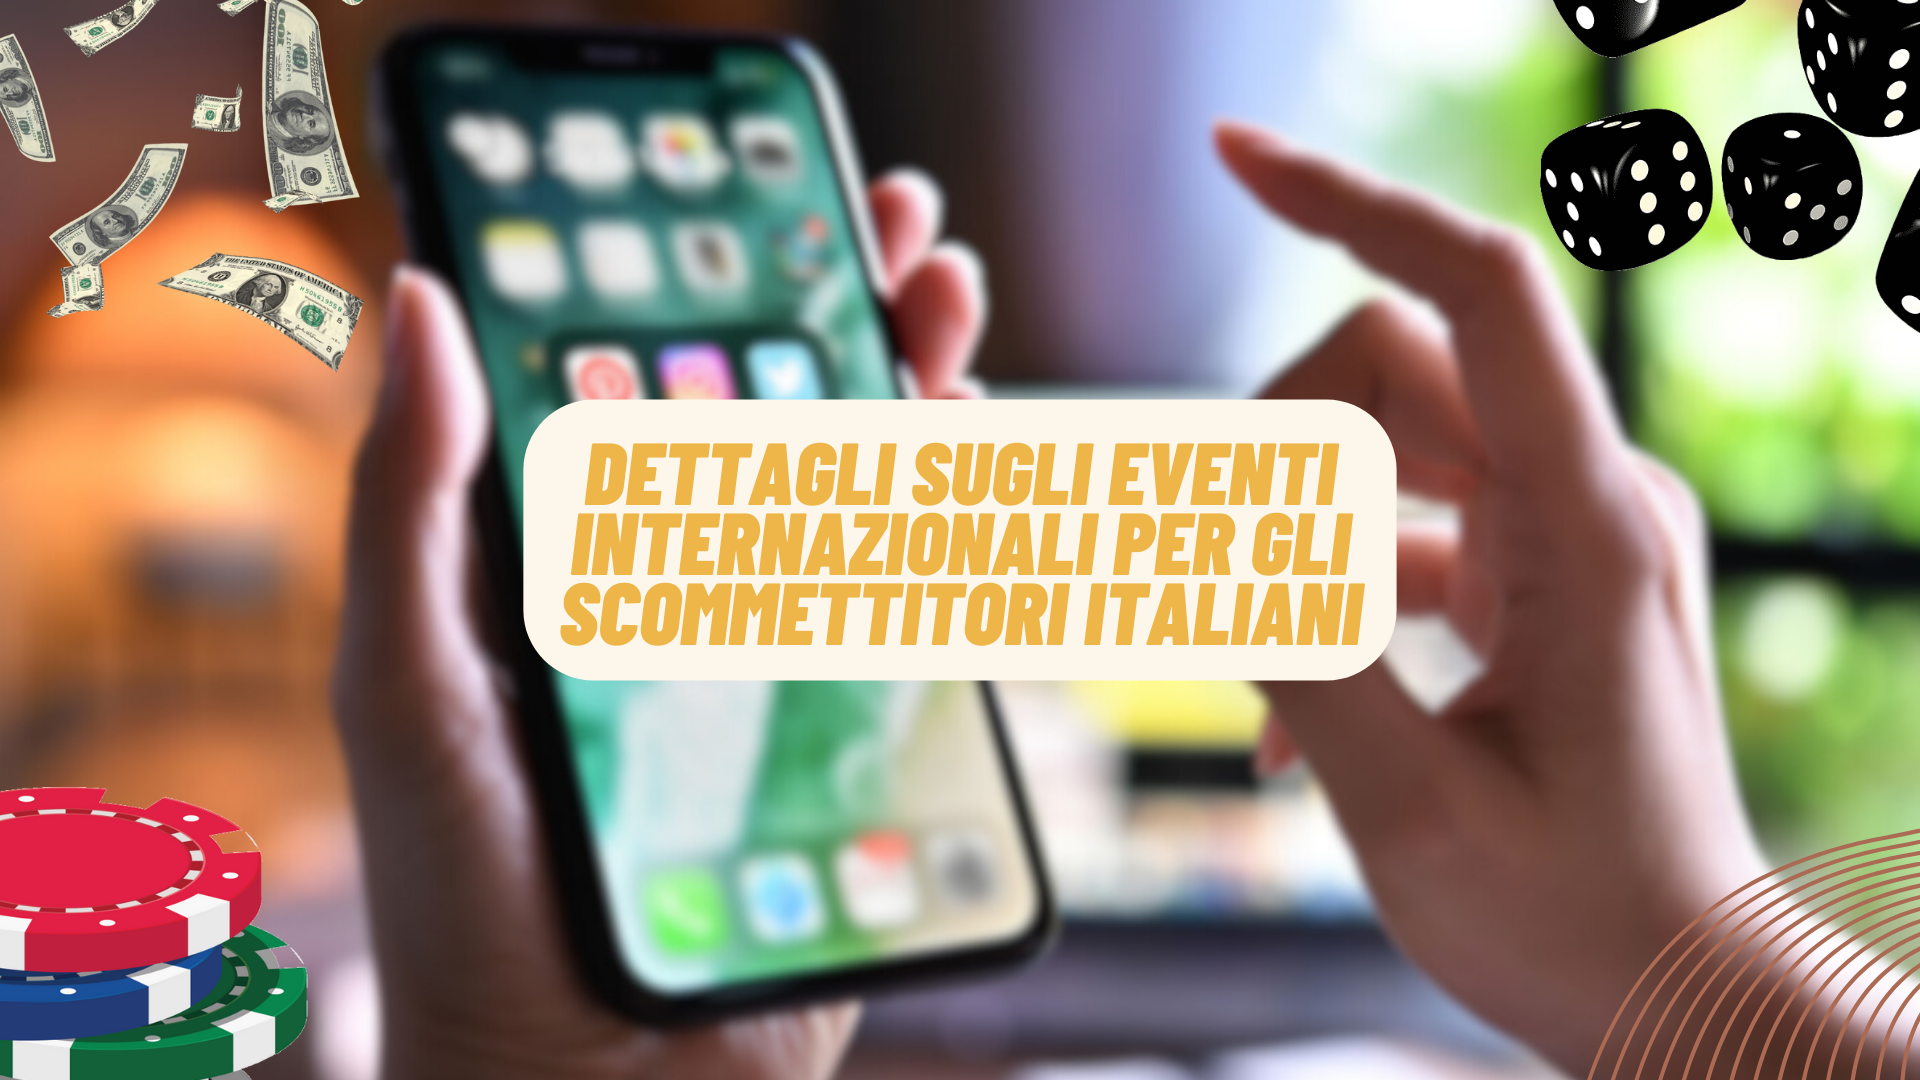 Dettagli sugli eventi internazionali per gli scommettitori italiani